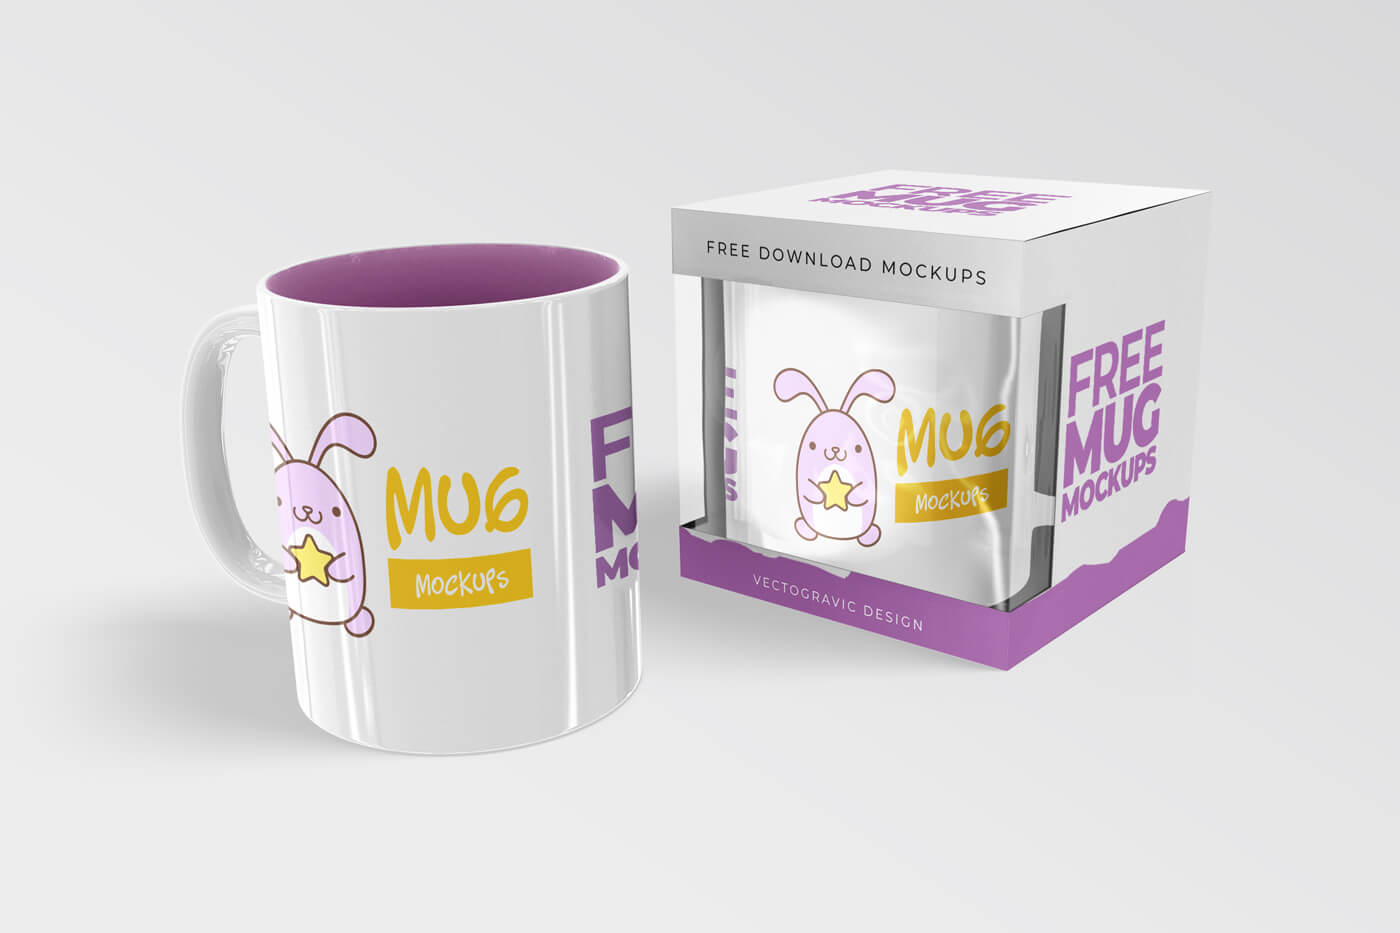  Free Mug Mockups 